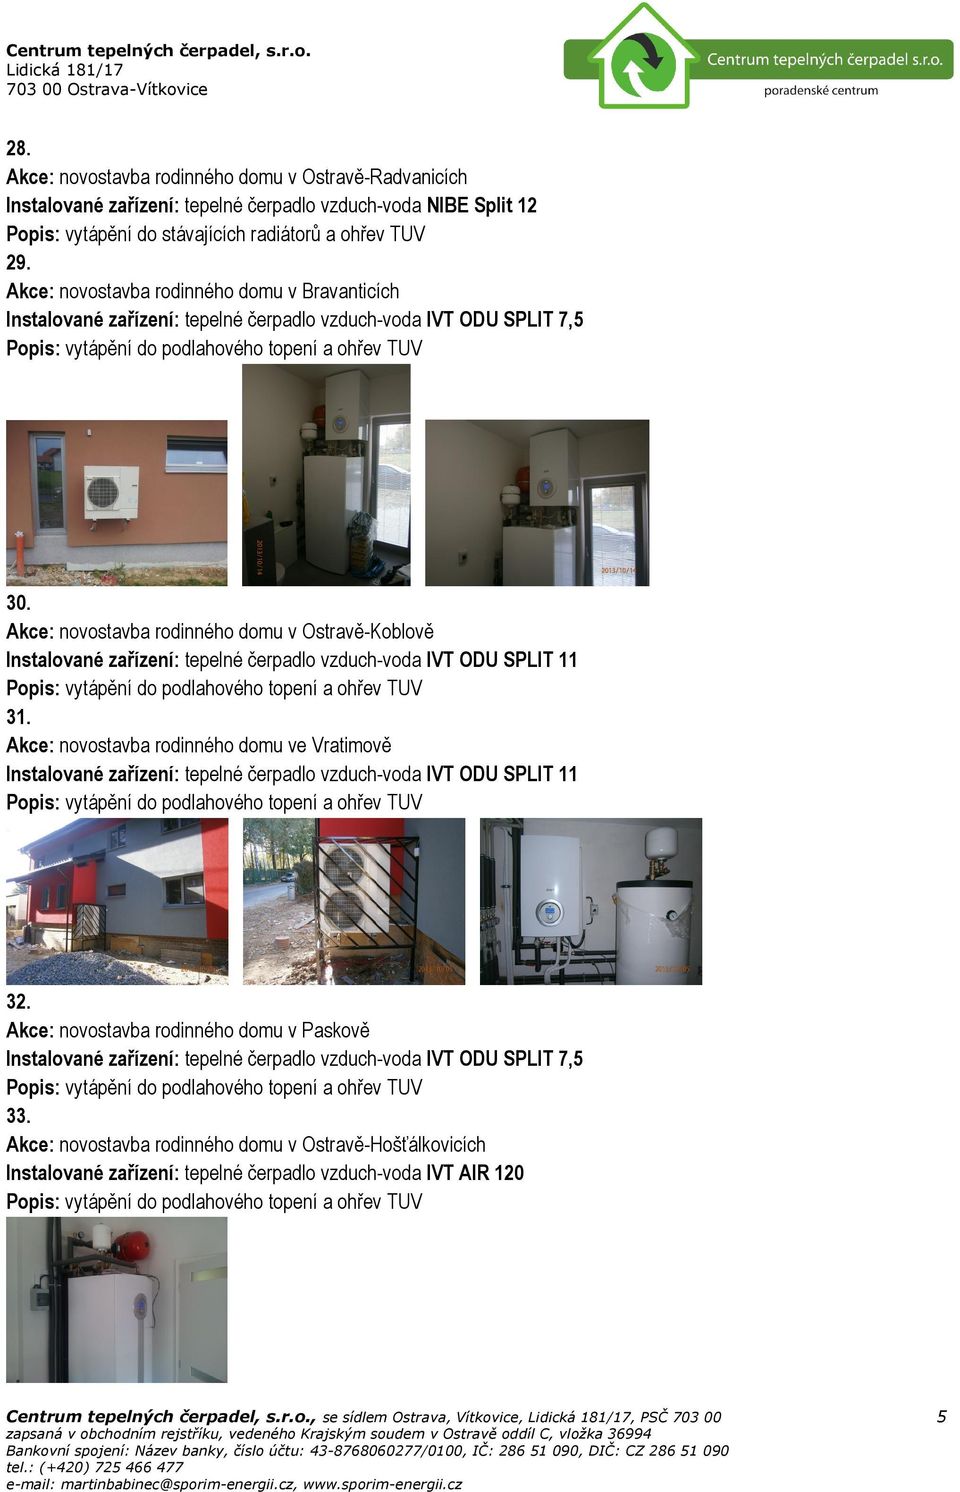 Akce: novostavba rodinného domu v Ostravě-Koblově Instalované zařízení: tepelné čerpadlo vzduch-voda IVT ODU SPLIT 11 31.